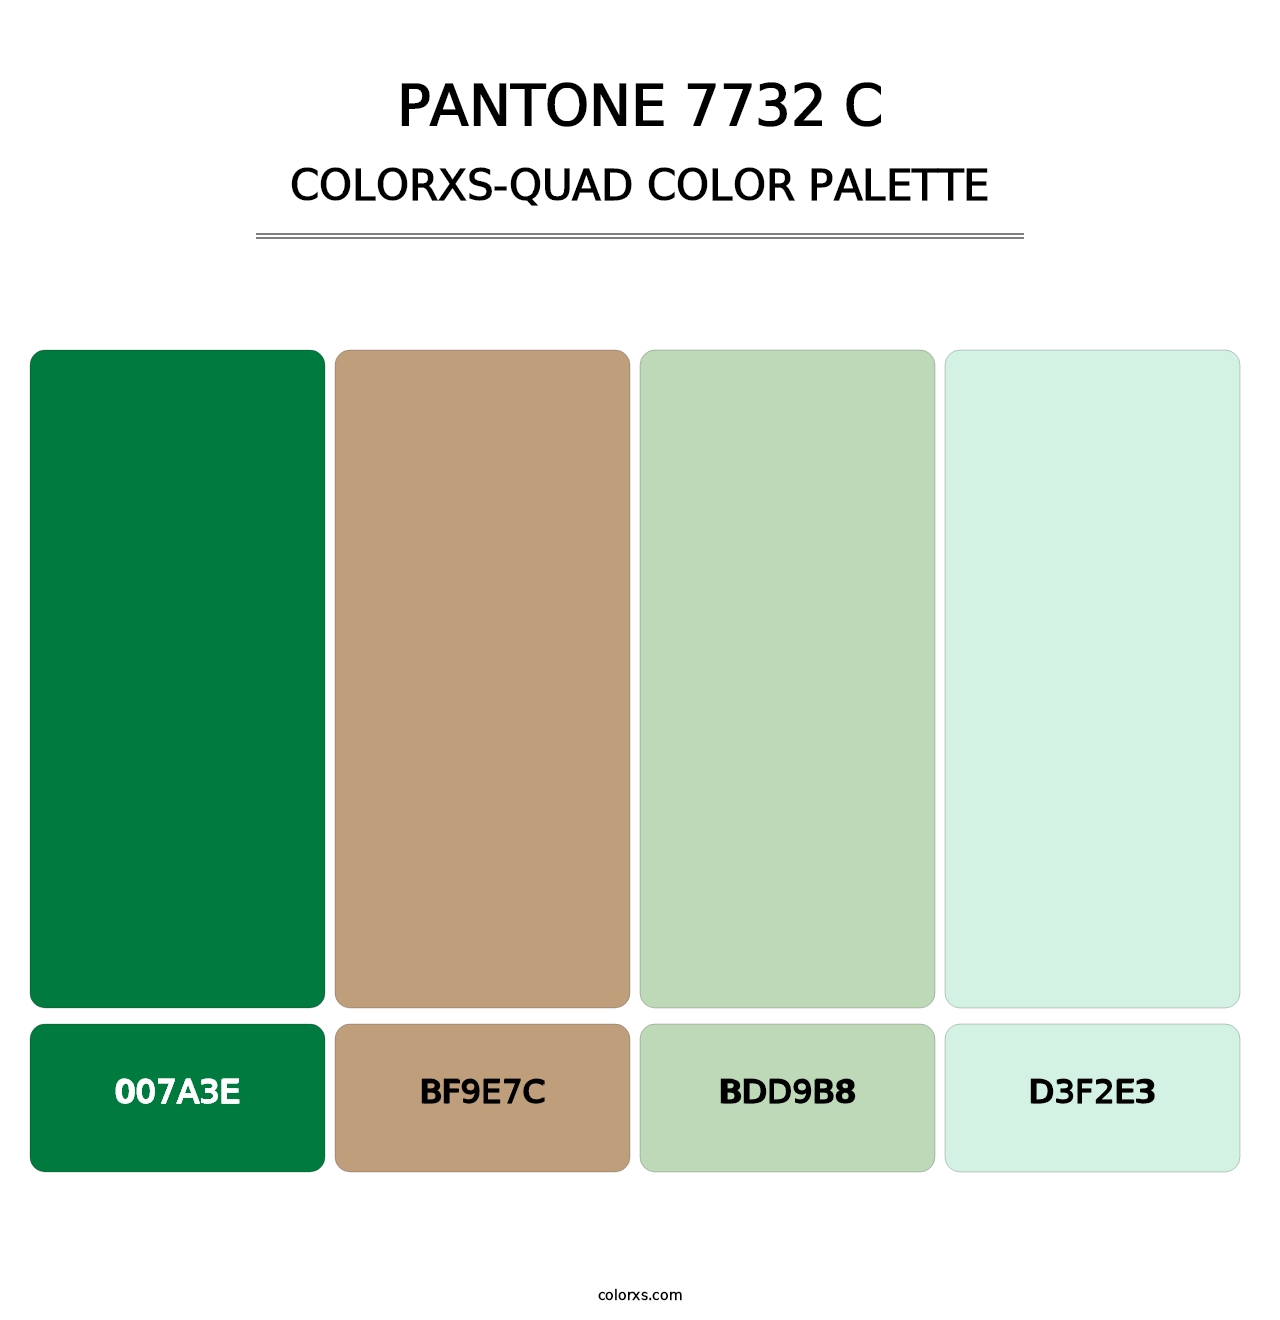 PANTONE 7732 C - Colorxs Quad Palette